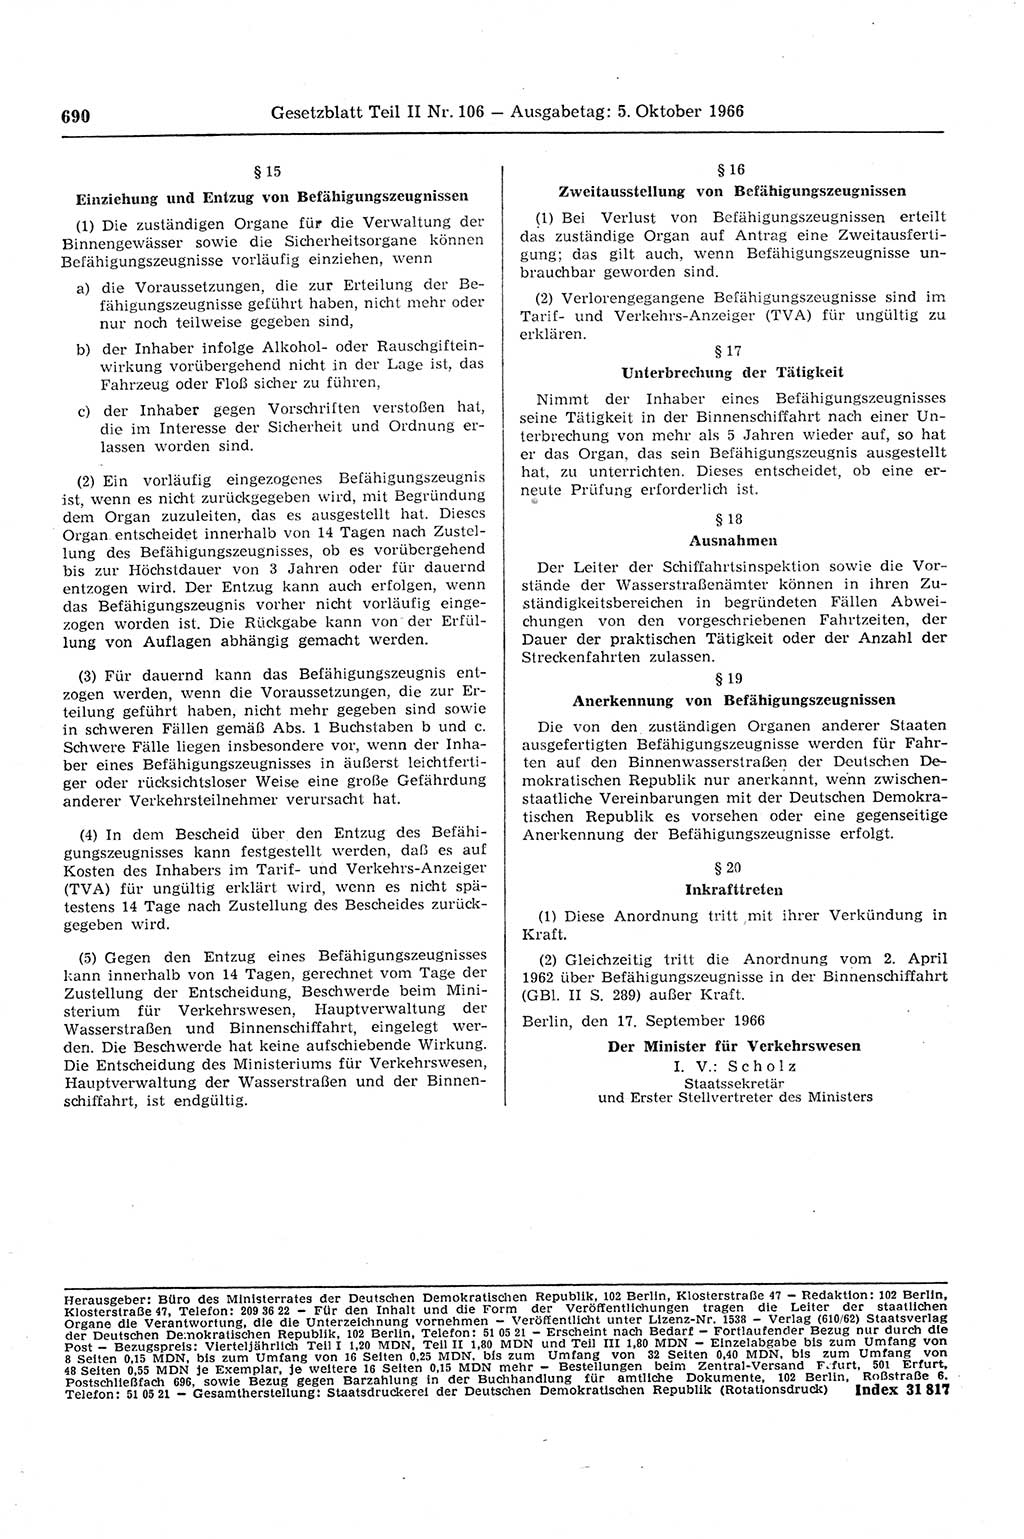 Gesetzblatt (GBl.) der Deutschen Demokratischen Republik (DDR) Teil ⅠⅠ 1966, Seite 690 (GBl. DDR ⅠⅠ 1966, S. 690)